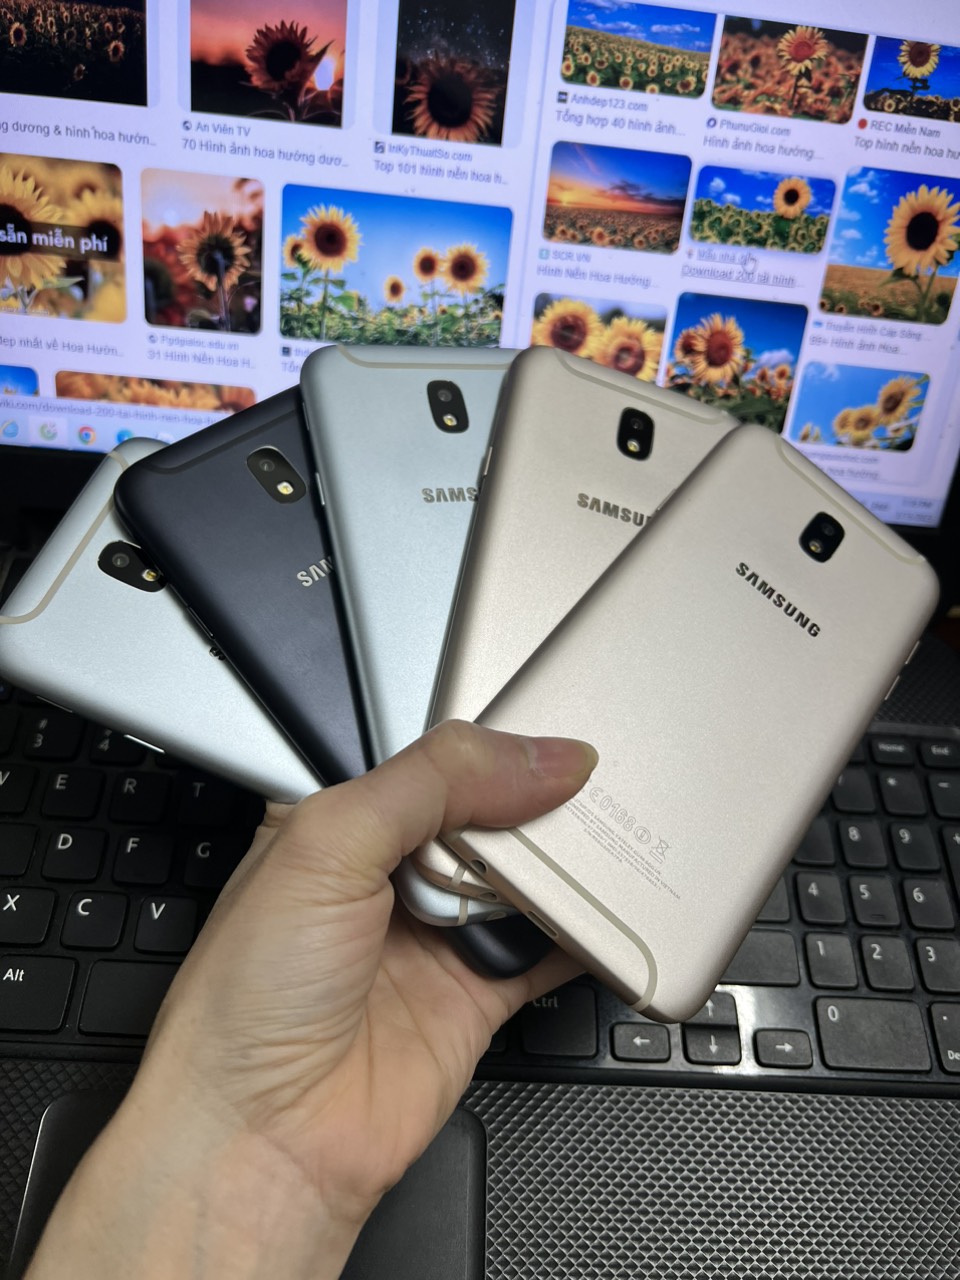 Samsung Galaxy J7 Pro 2024 - Bạn đang tìm kiếm một chiếc smartphone đầy đủ tính năng, thiết kế đẹp mắt và giá cả hợp lý? Samsung Galaxy J7 Pro 2024 chính là sự lựa chọn tuyệt vời cho bạn. Với nhiều cải tiến vượt trội, chiếc điện thoại này sẽ đem lại cho bạn trải nghiệm tuyệt vời.